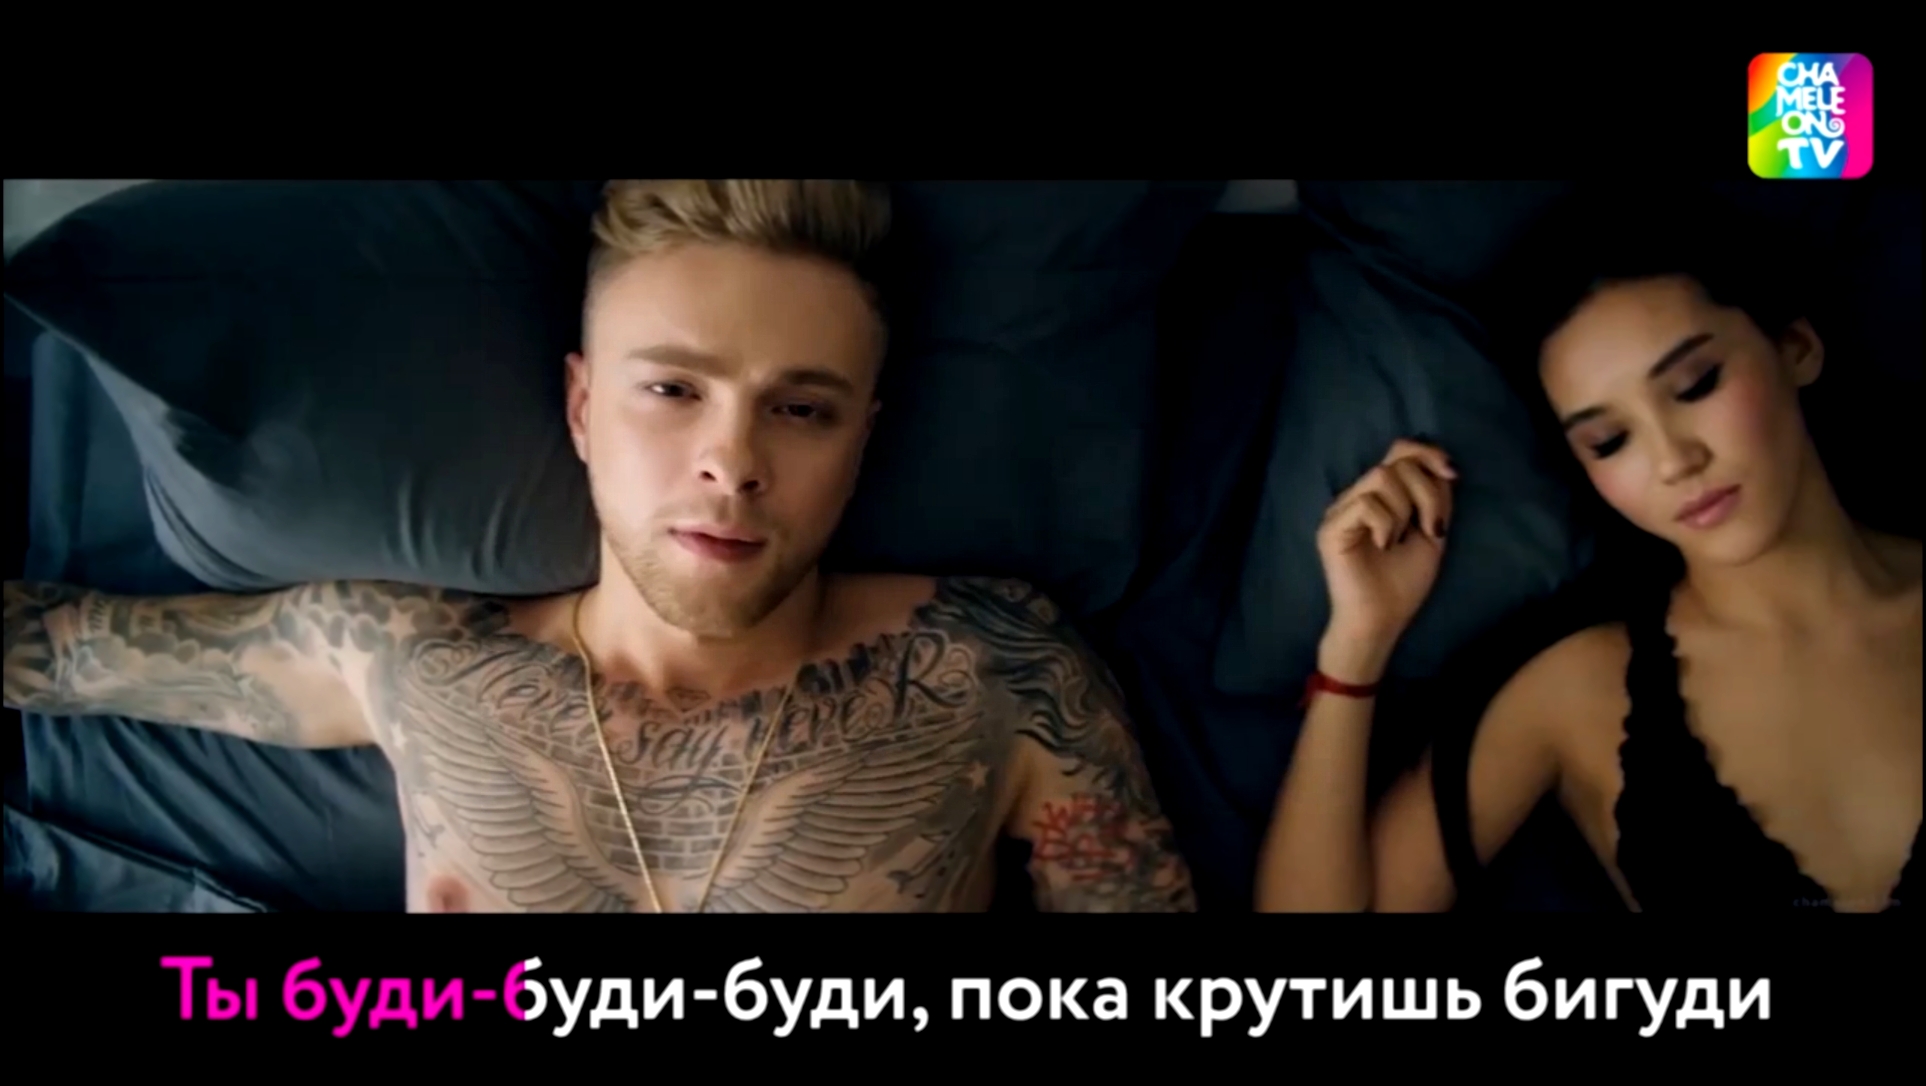 Егор Крид — Будильник (если бы песня была о том, что происходит в клипе) - видеоклип на песню